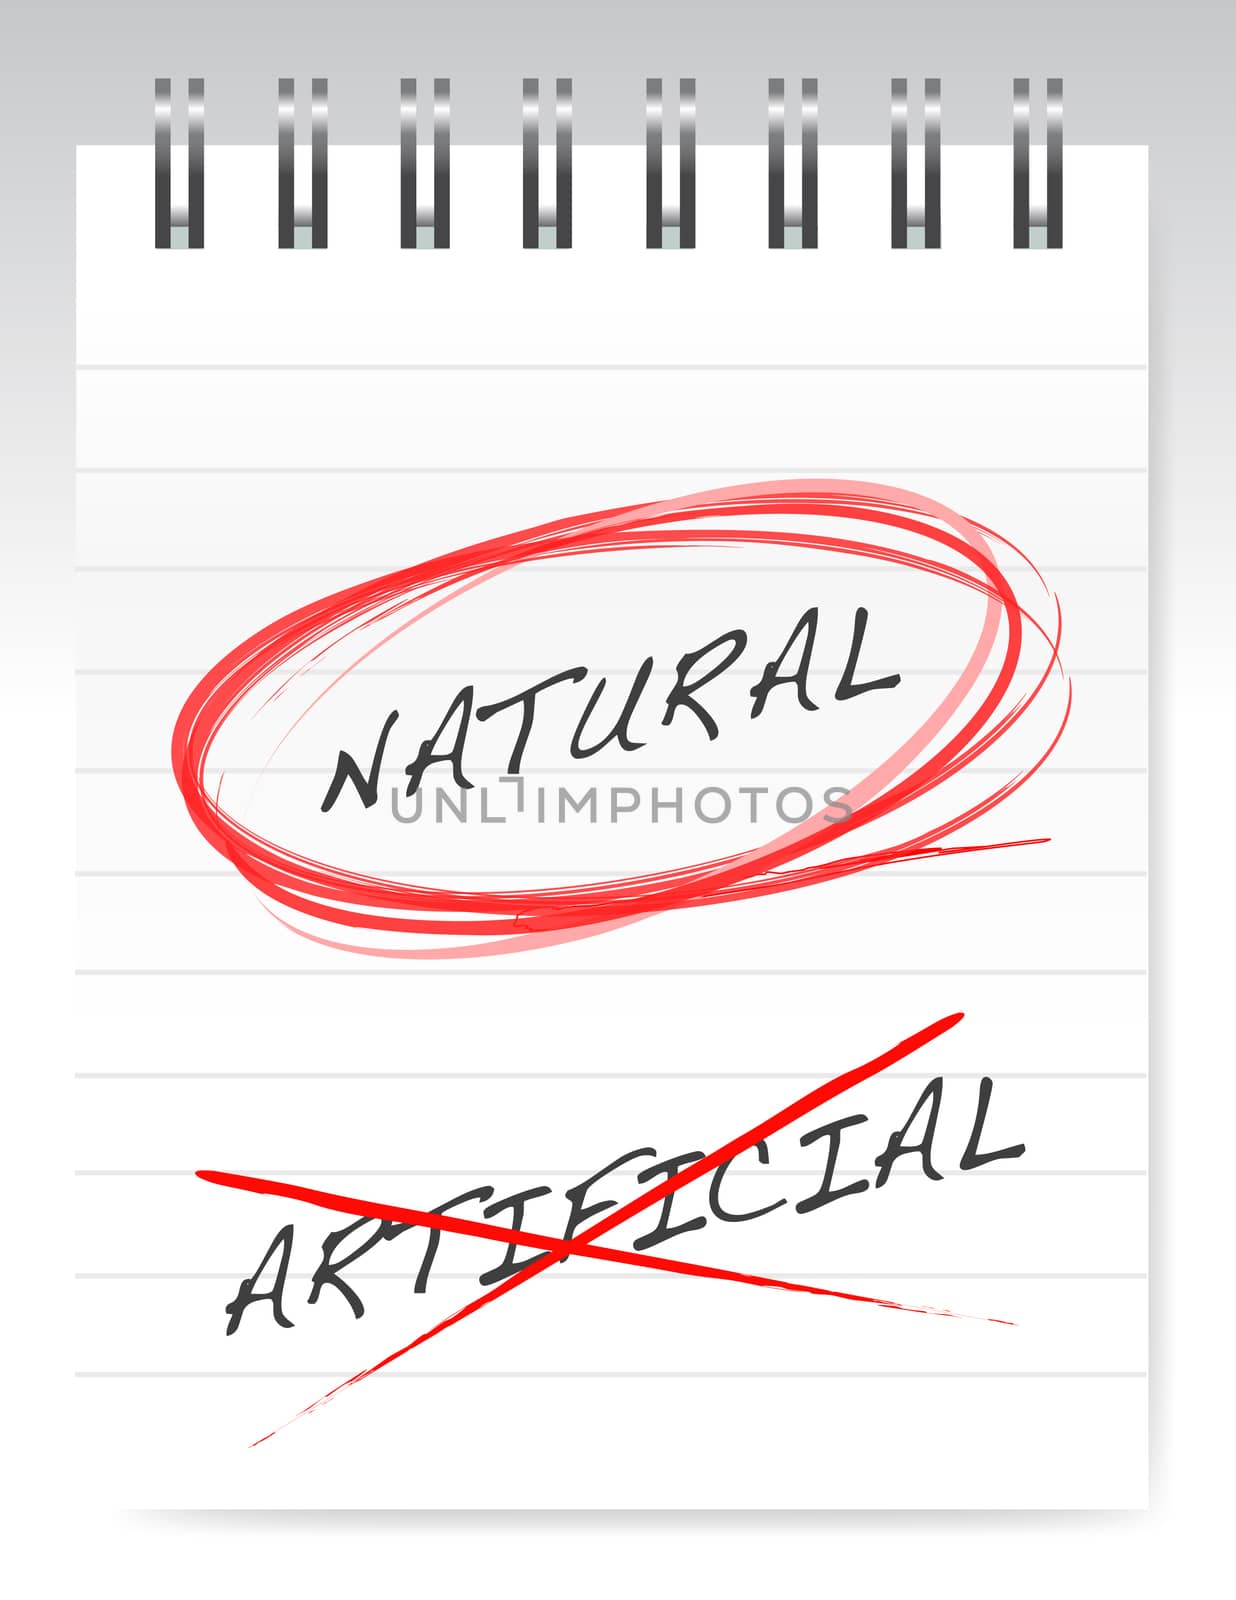 chose natural over artificial illustration design